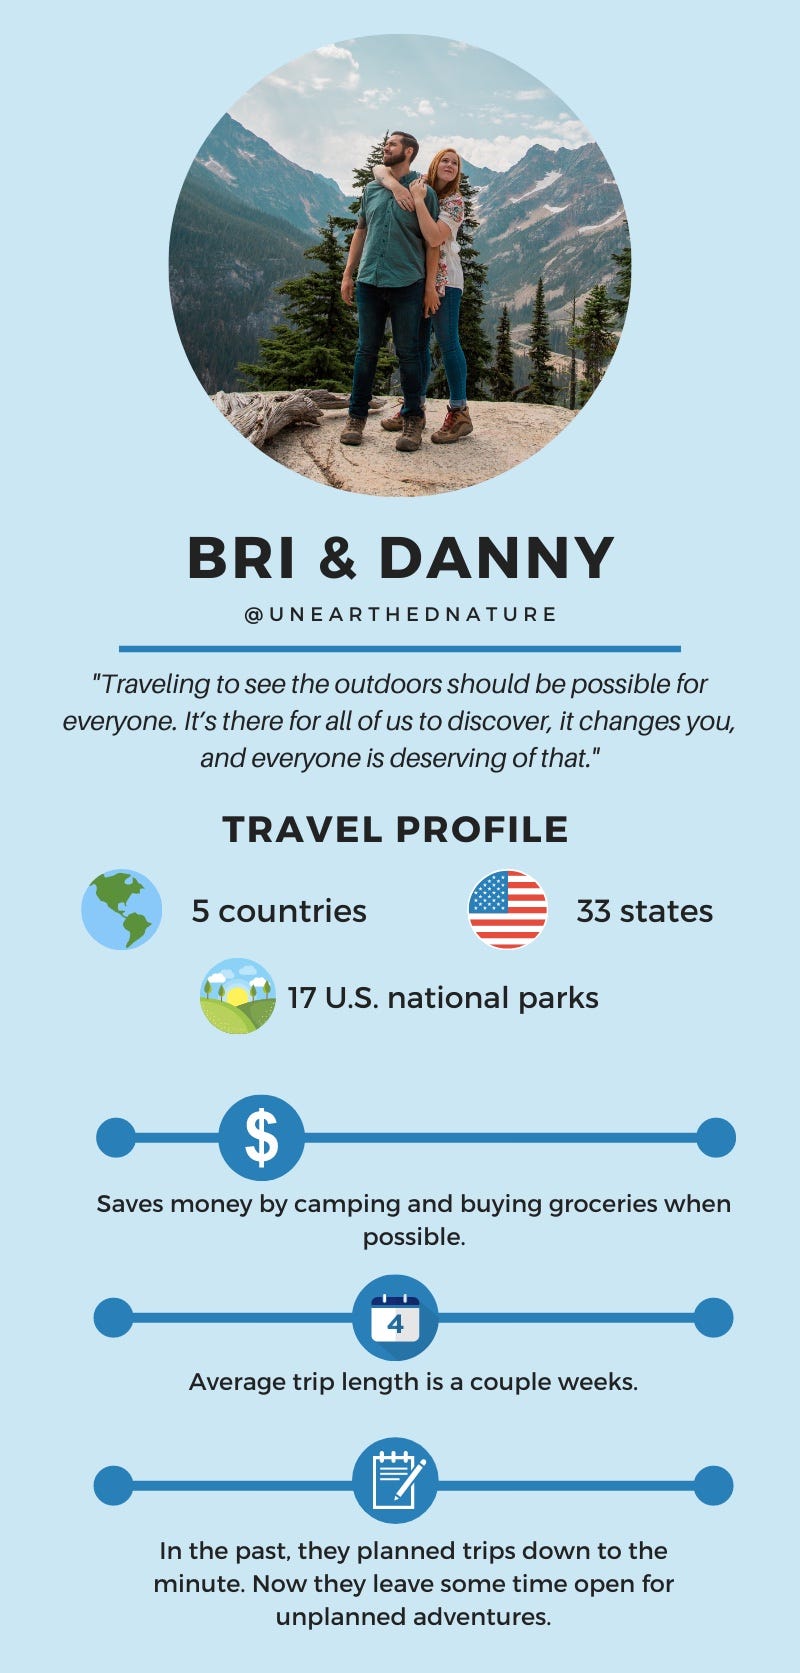 Bri and Danny travel profile